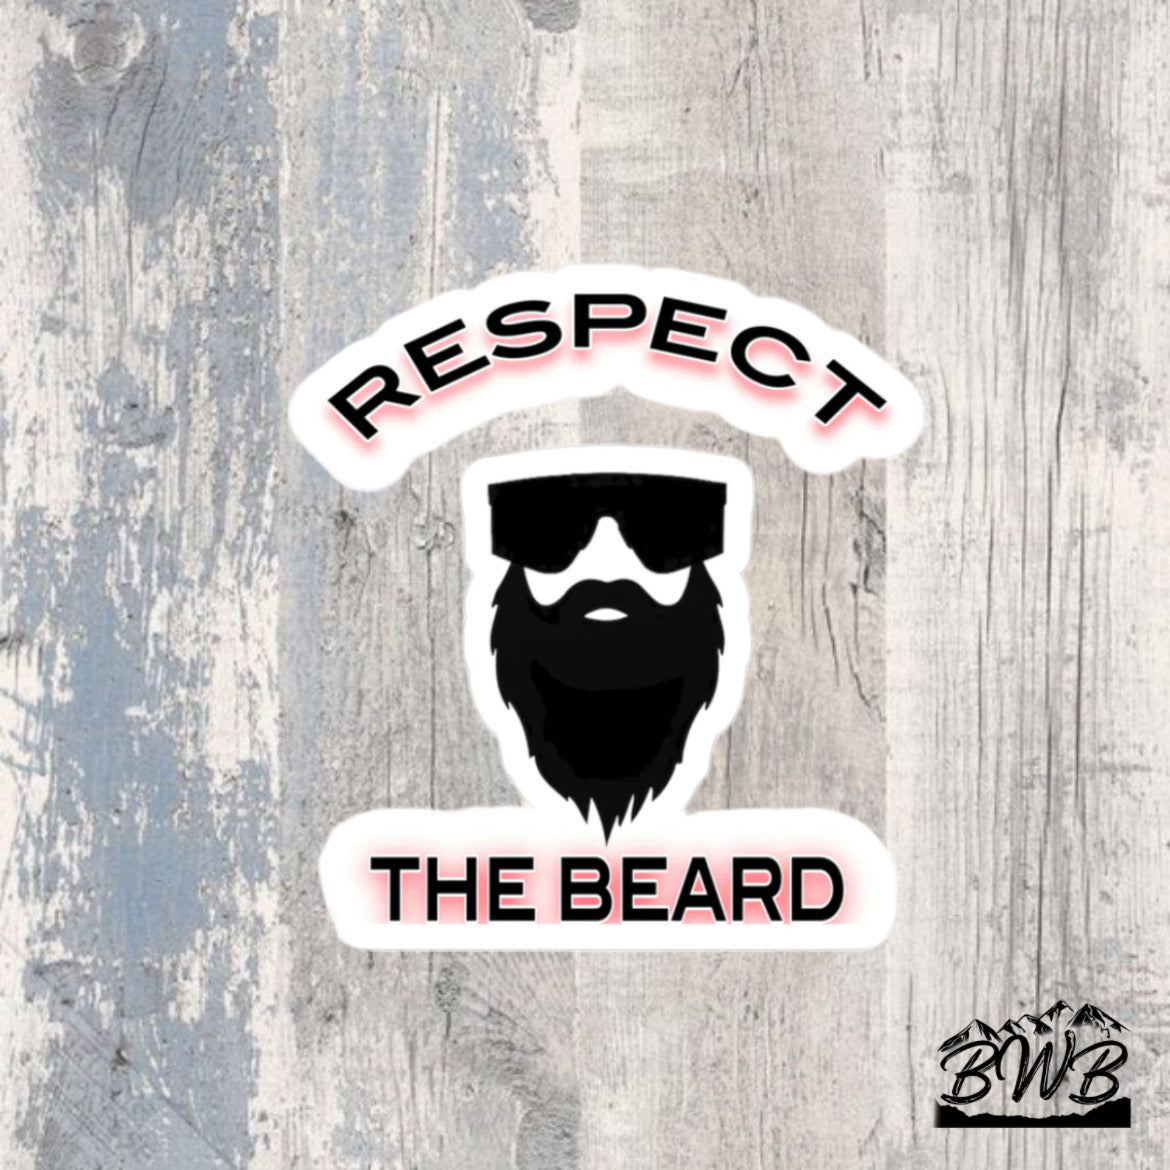 Respect The Beard Decal - Backwoods Branding Co.